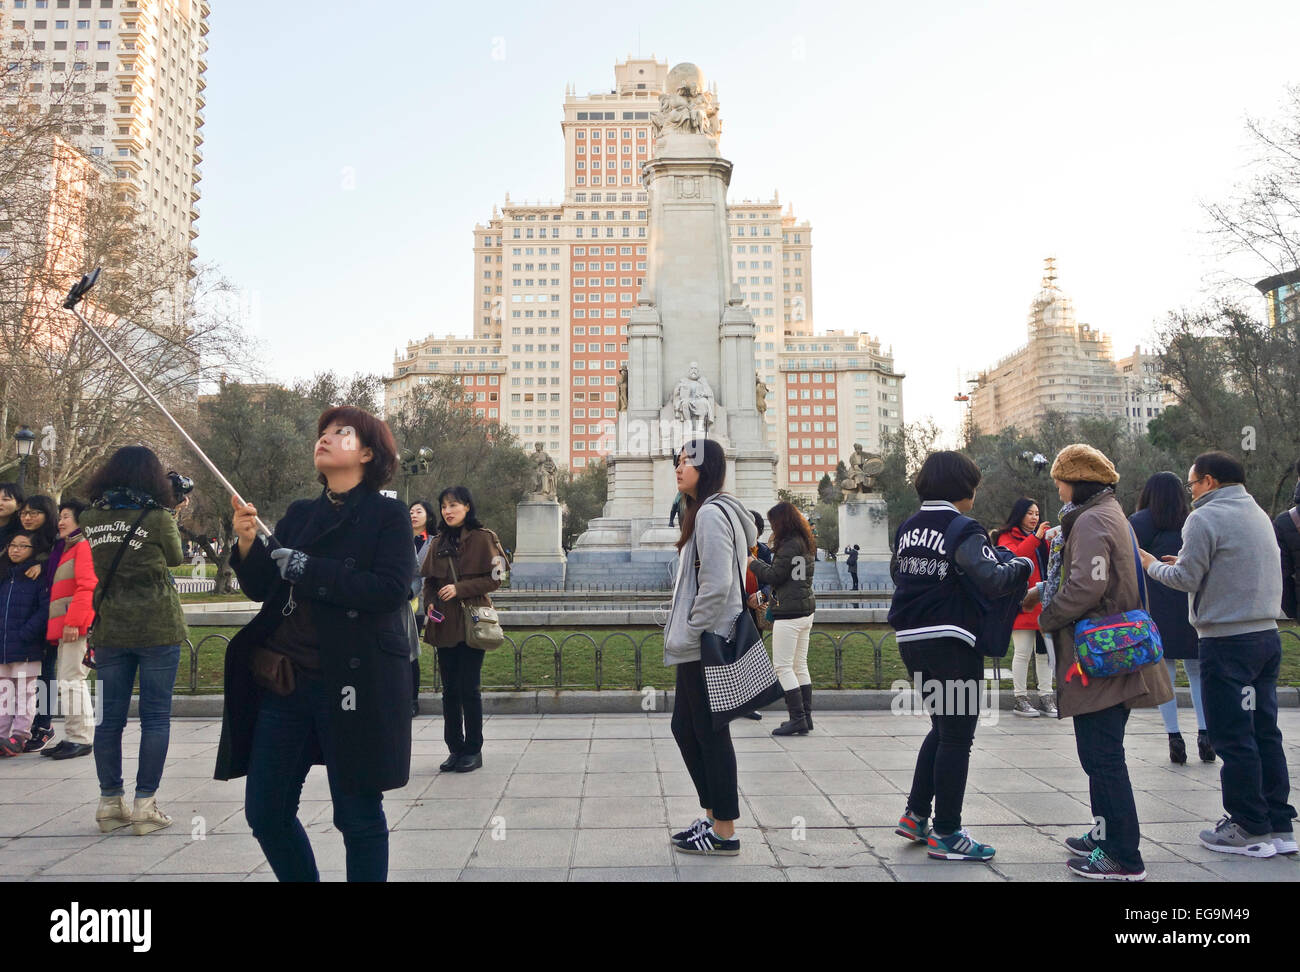 Madrid. Chinesische Touristen an der Plaza de España, dem spanischen Platz, mit dem Denkmal für Miguel de Cervantes, Madrid, Spanien. Stockfoto